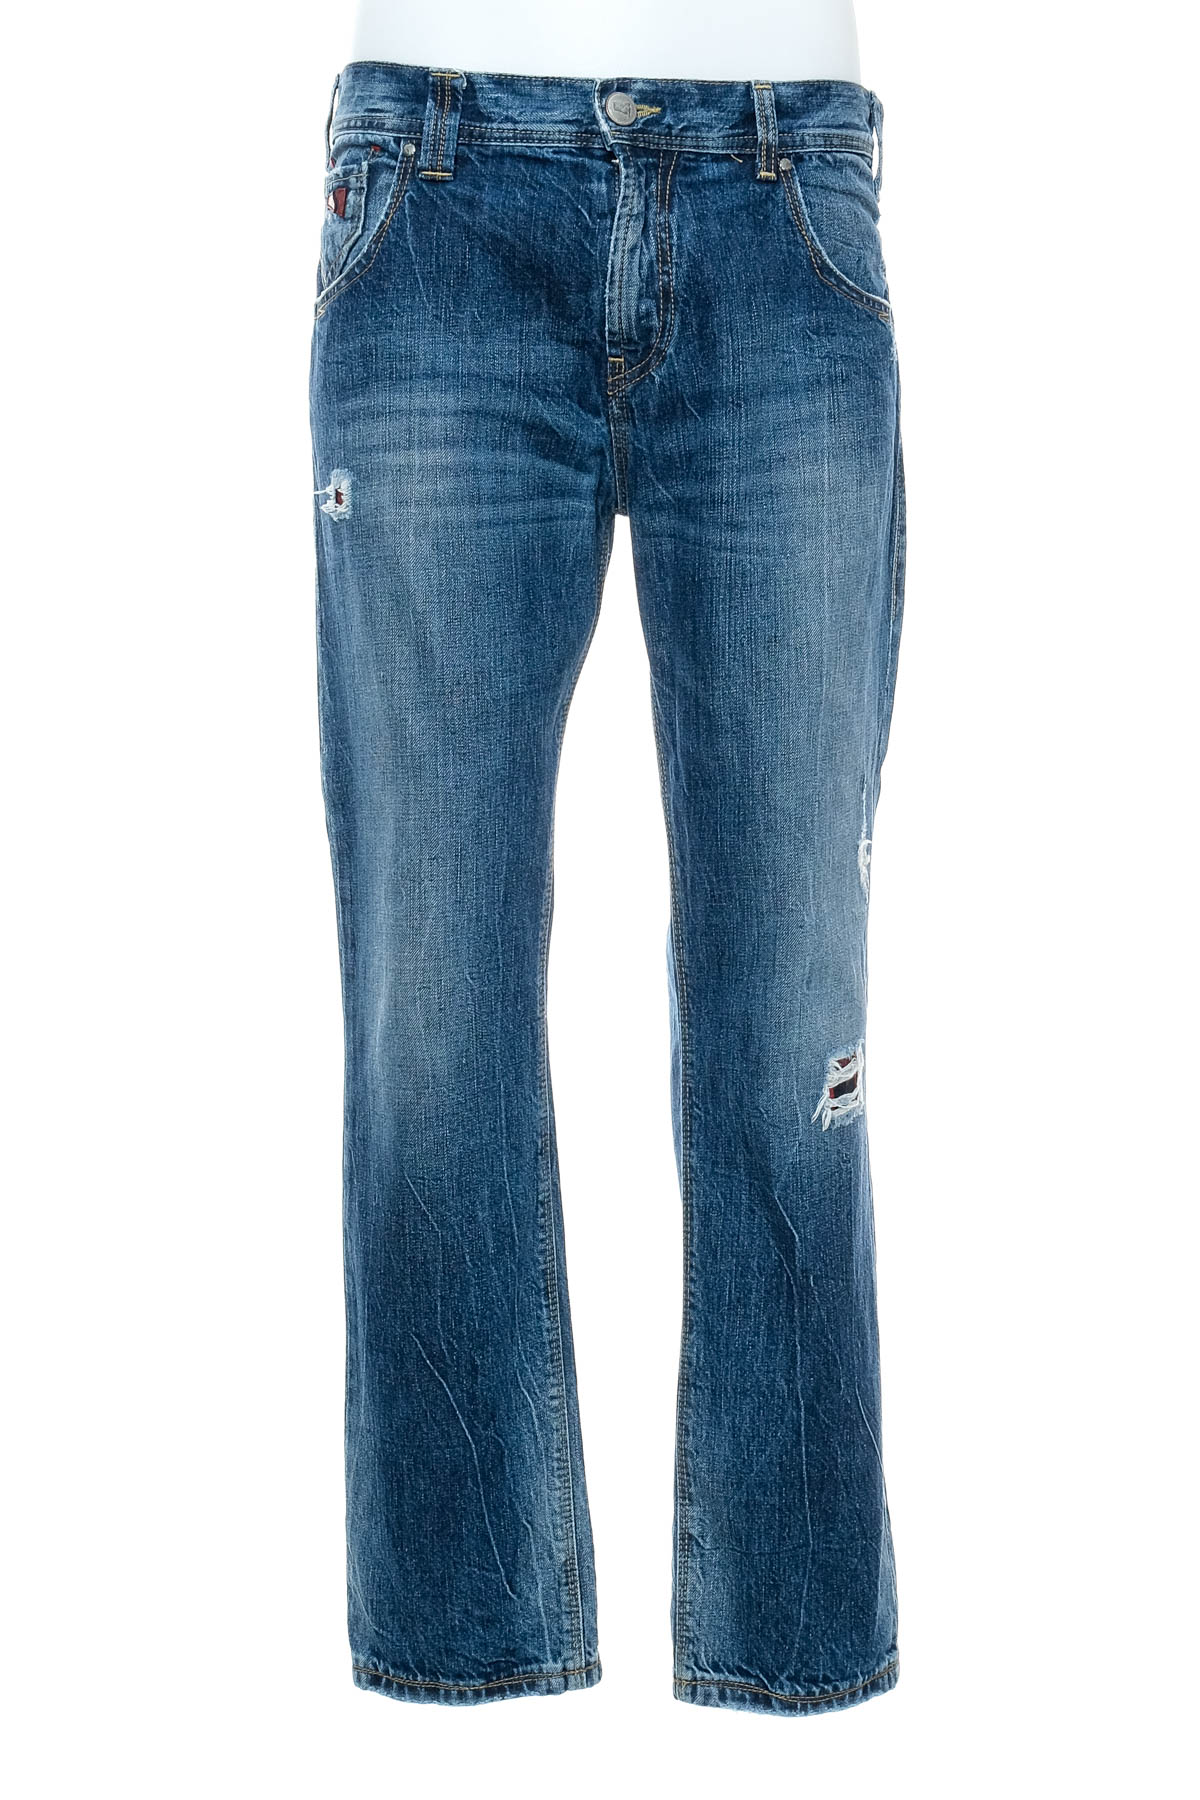 Jeans pentru bărbăți - Staff Jeans & Co. - 0